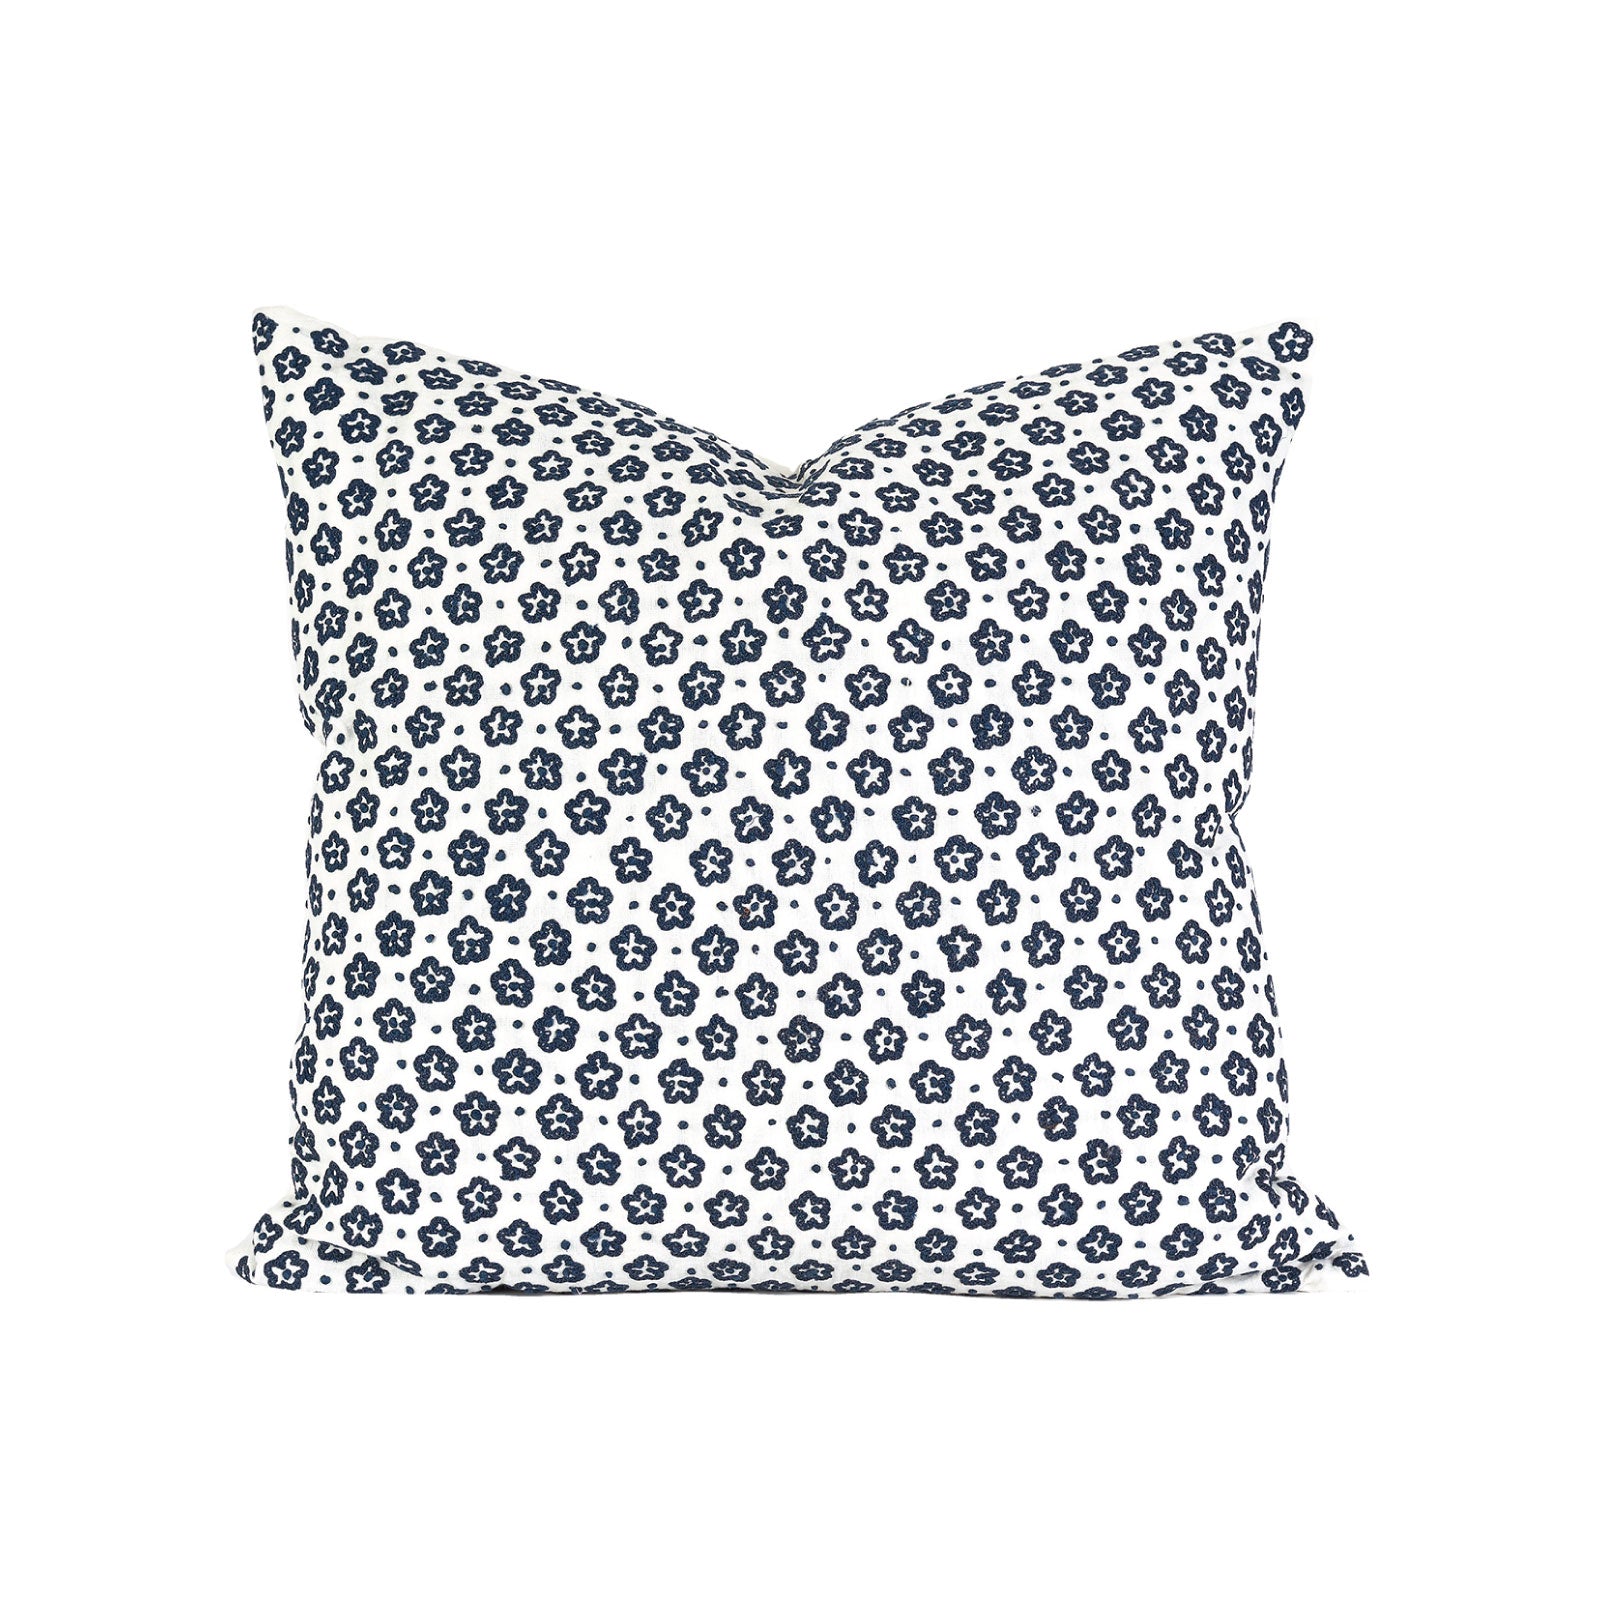 Starburst Embroidered Pillow in Indigo